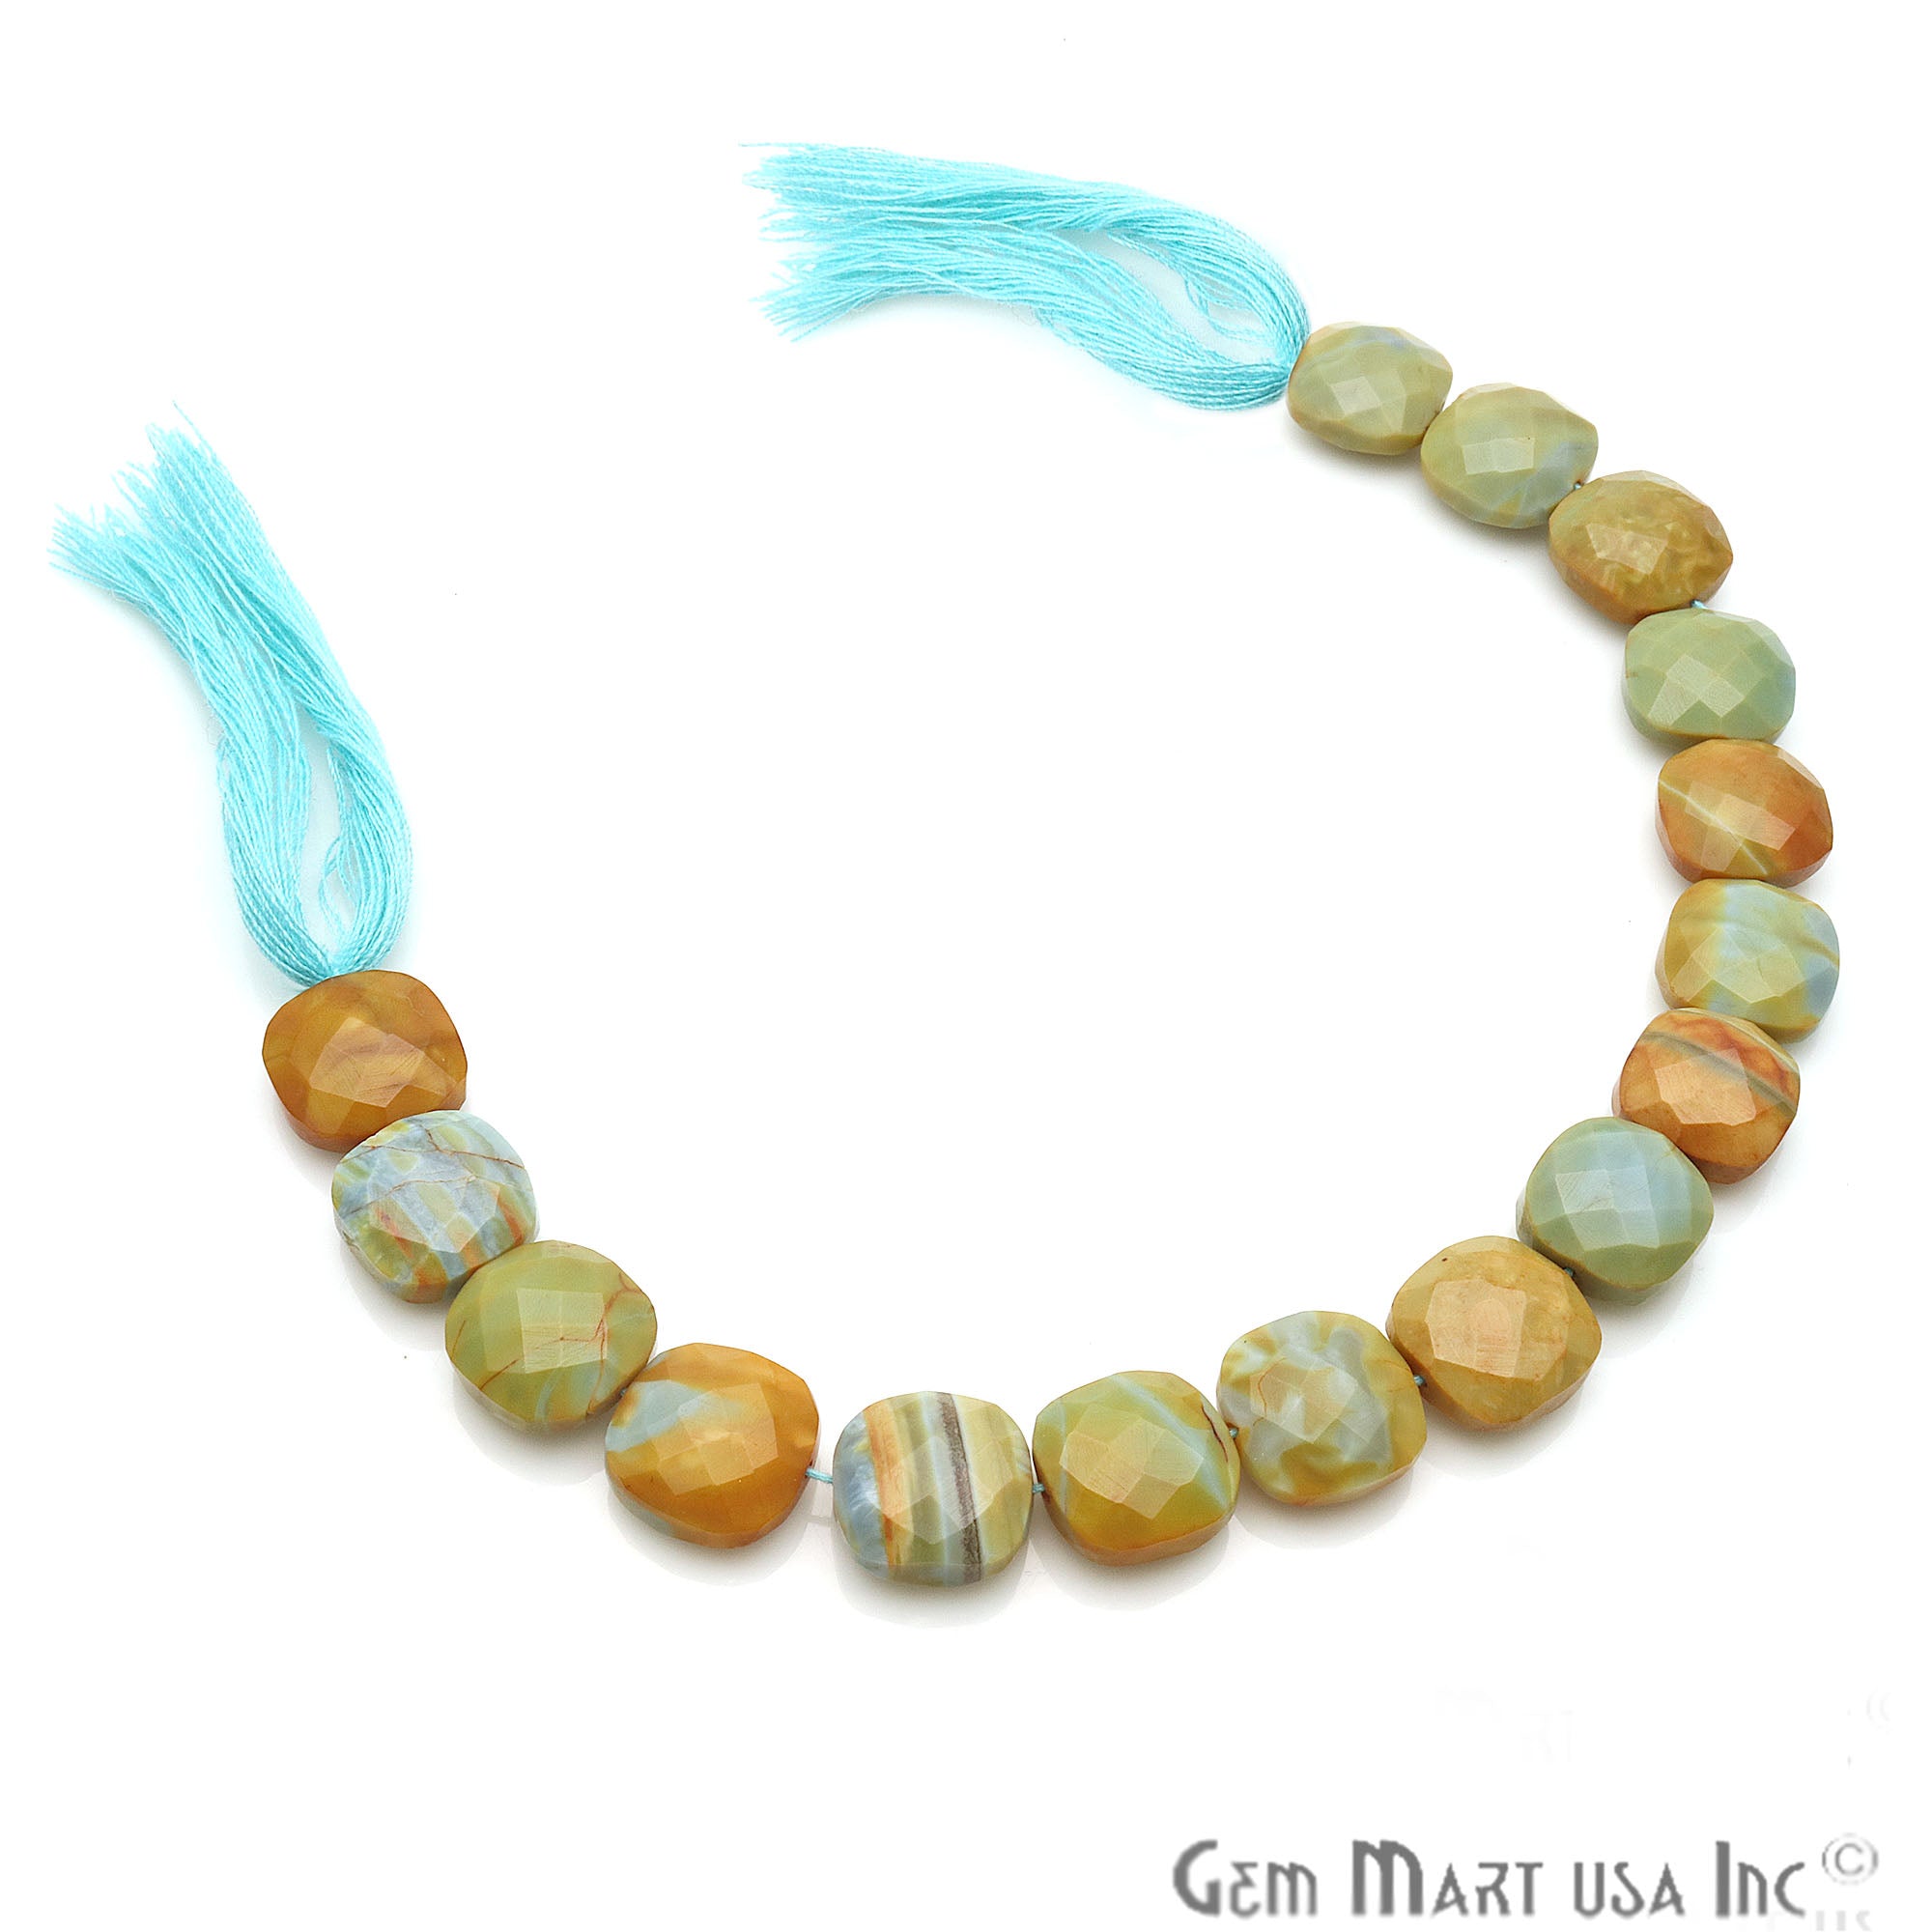 Boulder Opal Square 13mm Crafting Beads Gemstone Strands 8INCH - GemMartUSA